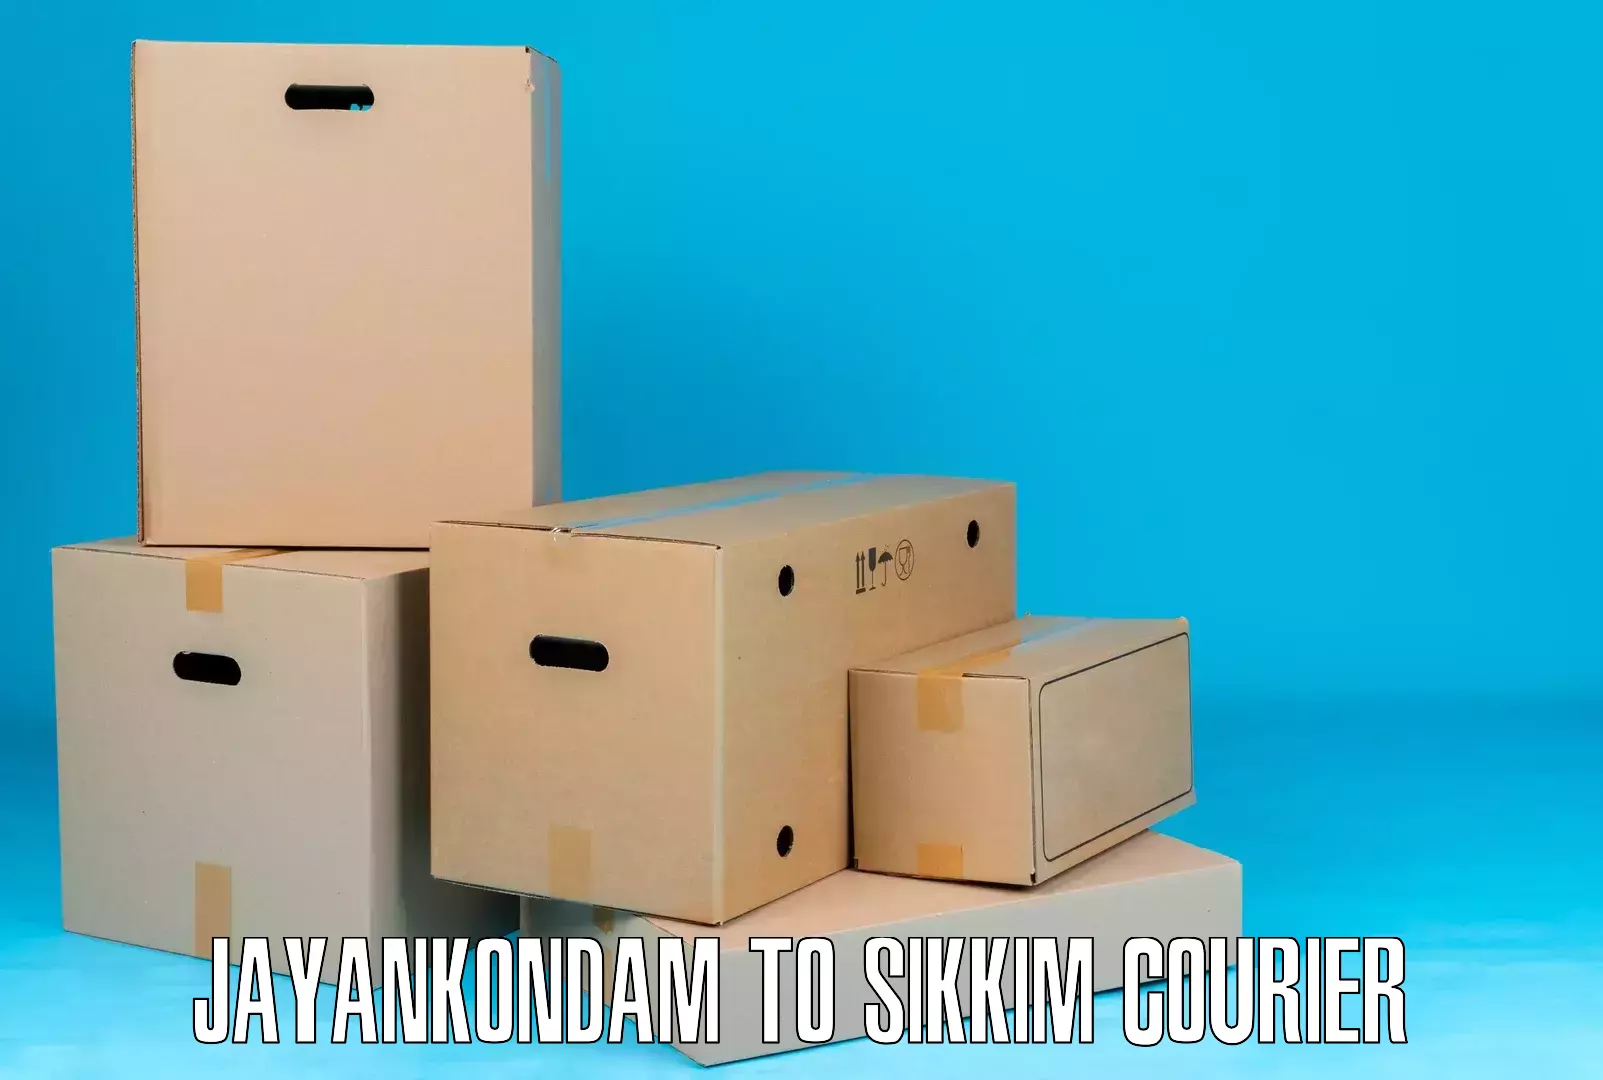 Efficient cargo handling Jayankondam to Sikkim